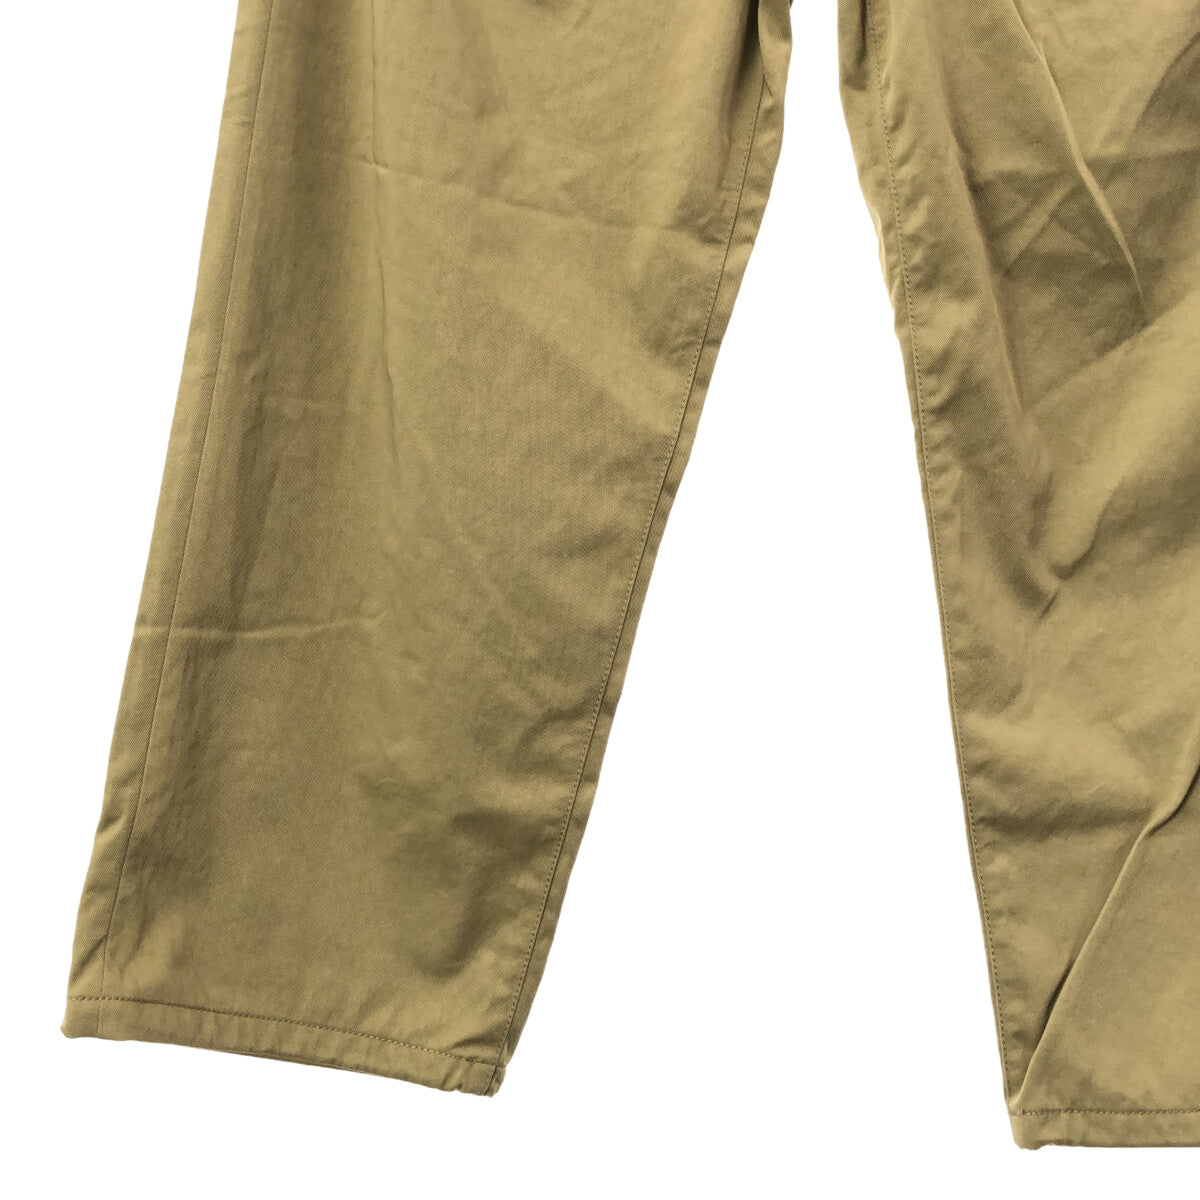 DAIWA PIER39 / ダイワピアサーティンナイン | Tech 8pocket Pants Twill 8ポケットパンツ | M | メンズ